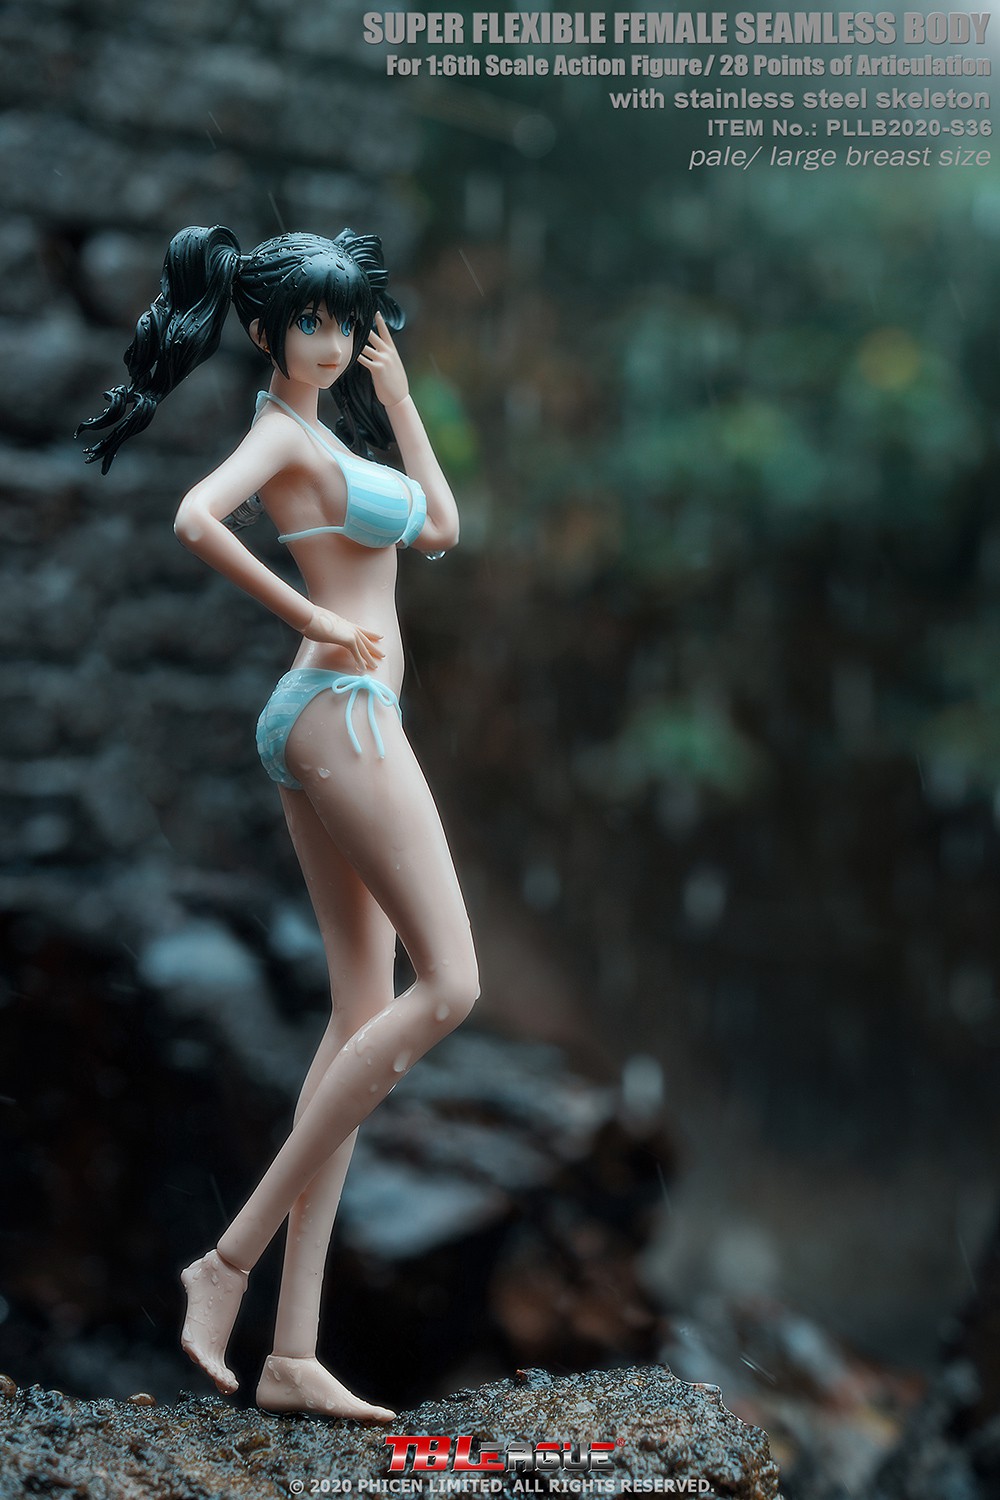 tbleague - NEW PRODUCT: TBLeague: 1/6 girl anime S36 / S37 "small waist fine" body 17191810